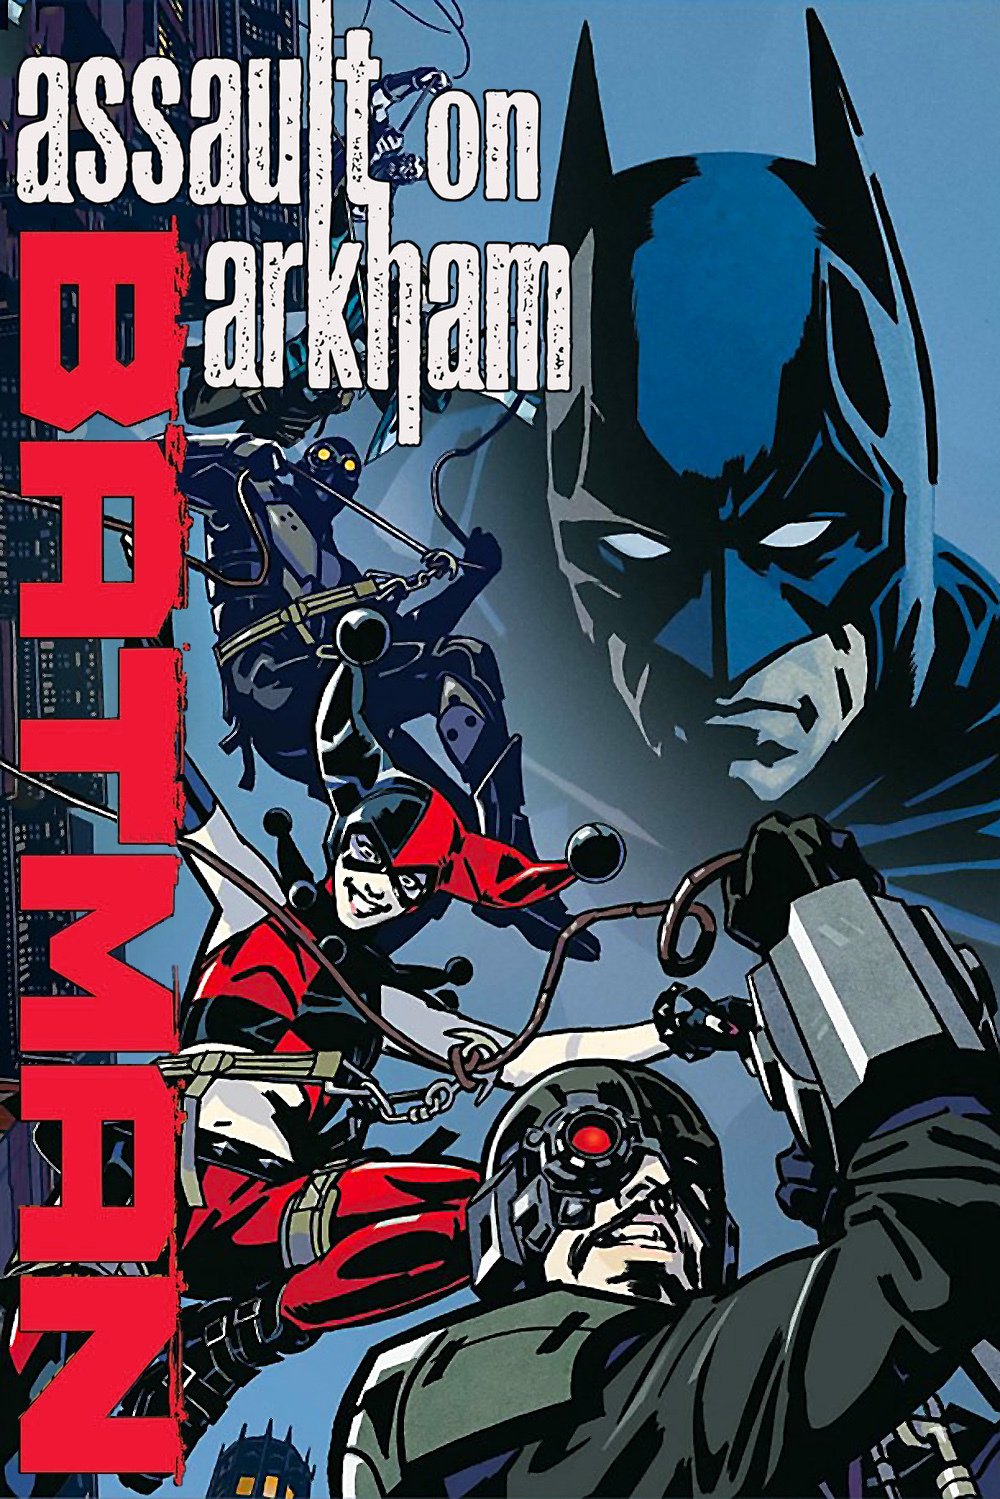 ბეტმენი: თავდასხმა არხამზე / Batman: Assault on Arkham ქართულად